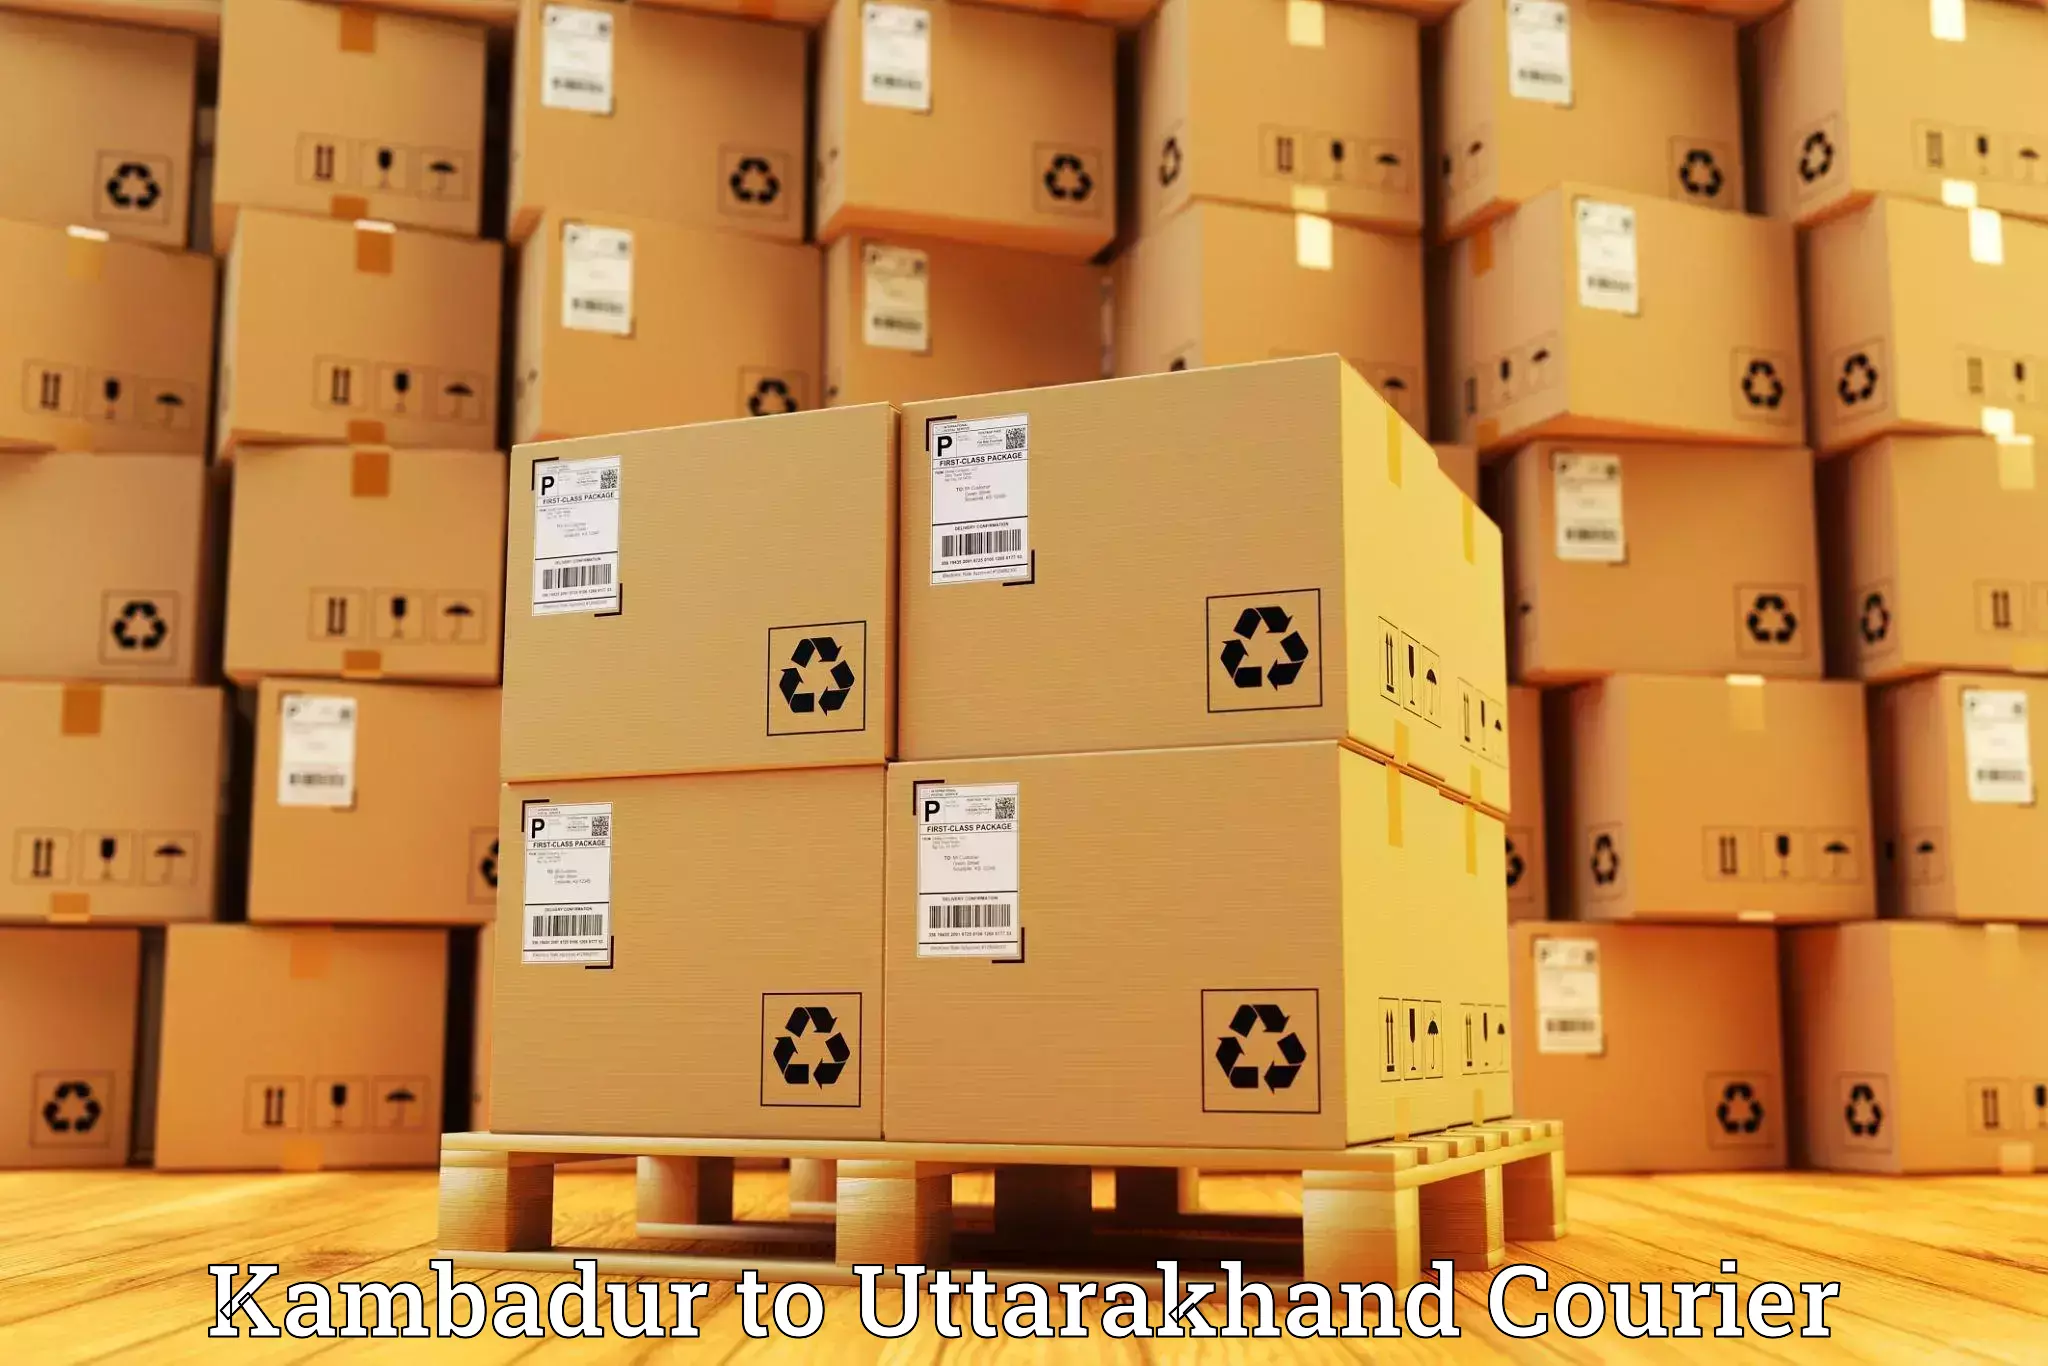 Automated parcel services Kambadur to Uttarakhand